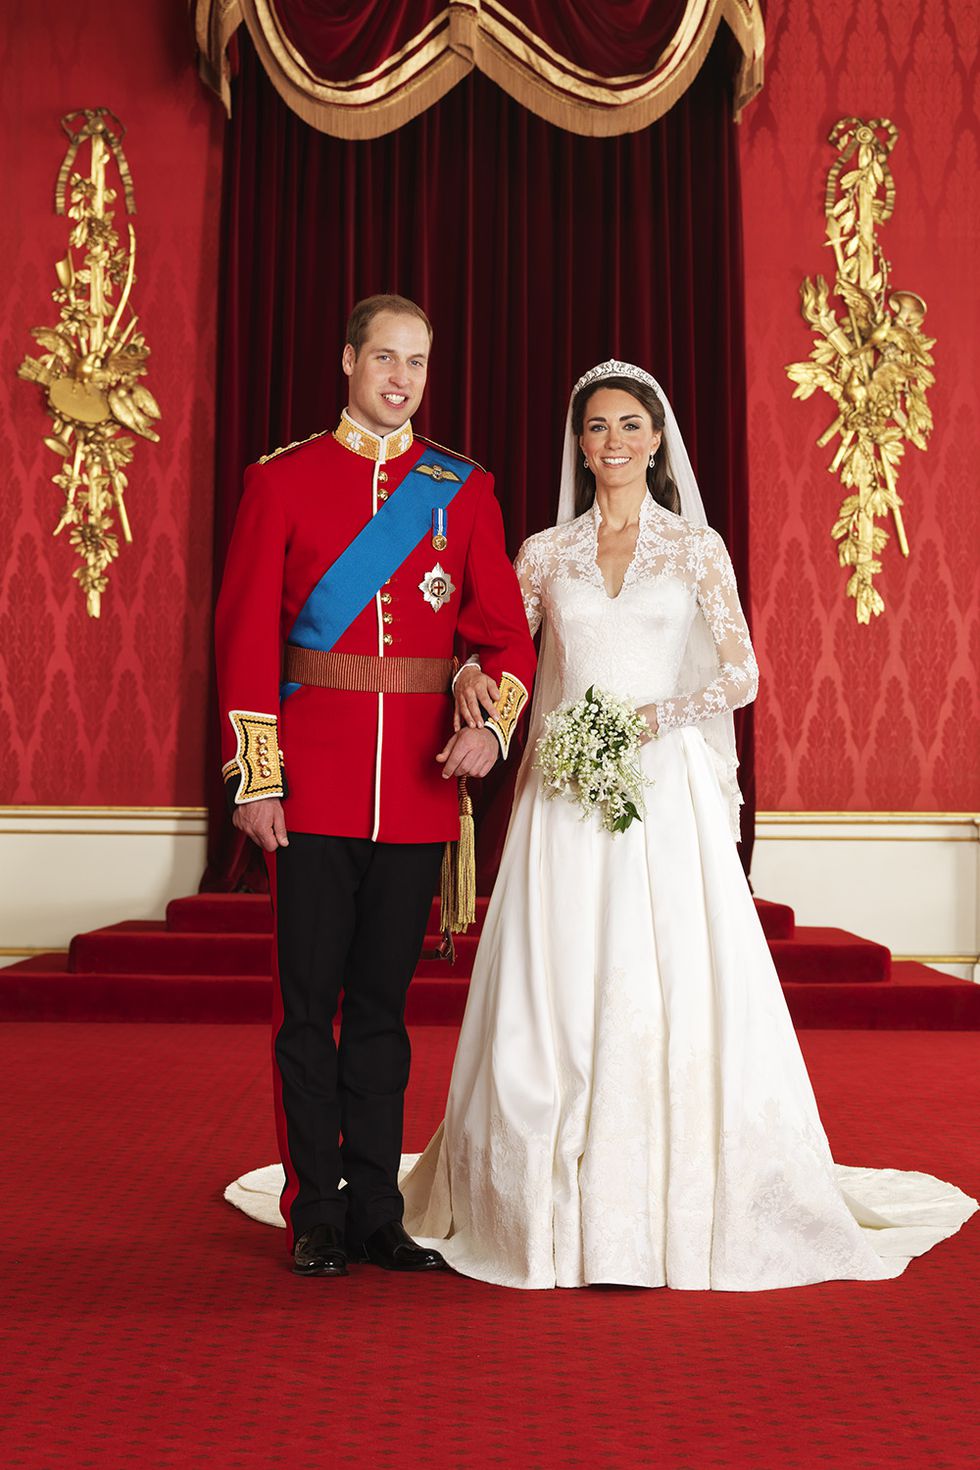 Chiếc váy cưới kiểu nàng tiên tiên cả được dự đoán là xu hướng thịnh hành trong năm 2022. Kiểu dáng này hoàn hảo và phù hợp cho mọi vóc dáng, có thiết kế ôm sát đường cong phần thần trên, xòe ra dưới đầu gối.Trên thực tế, đó là kiểu váy phổ biến đến nỗi ngay cả bản thân Kate Middleton cũng mặc một thứ khá giống khi cô kết hôn với Hoàng tử William vào năm 2011 và đến nay vẫn tiếp tục thu hút sự chú ý.